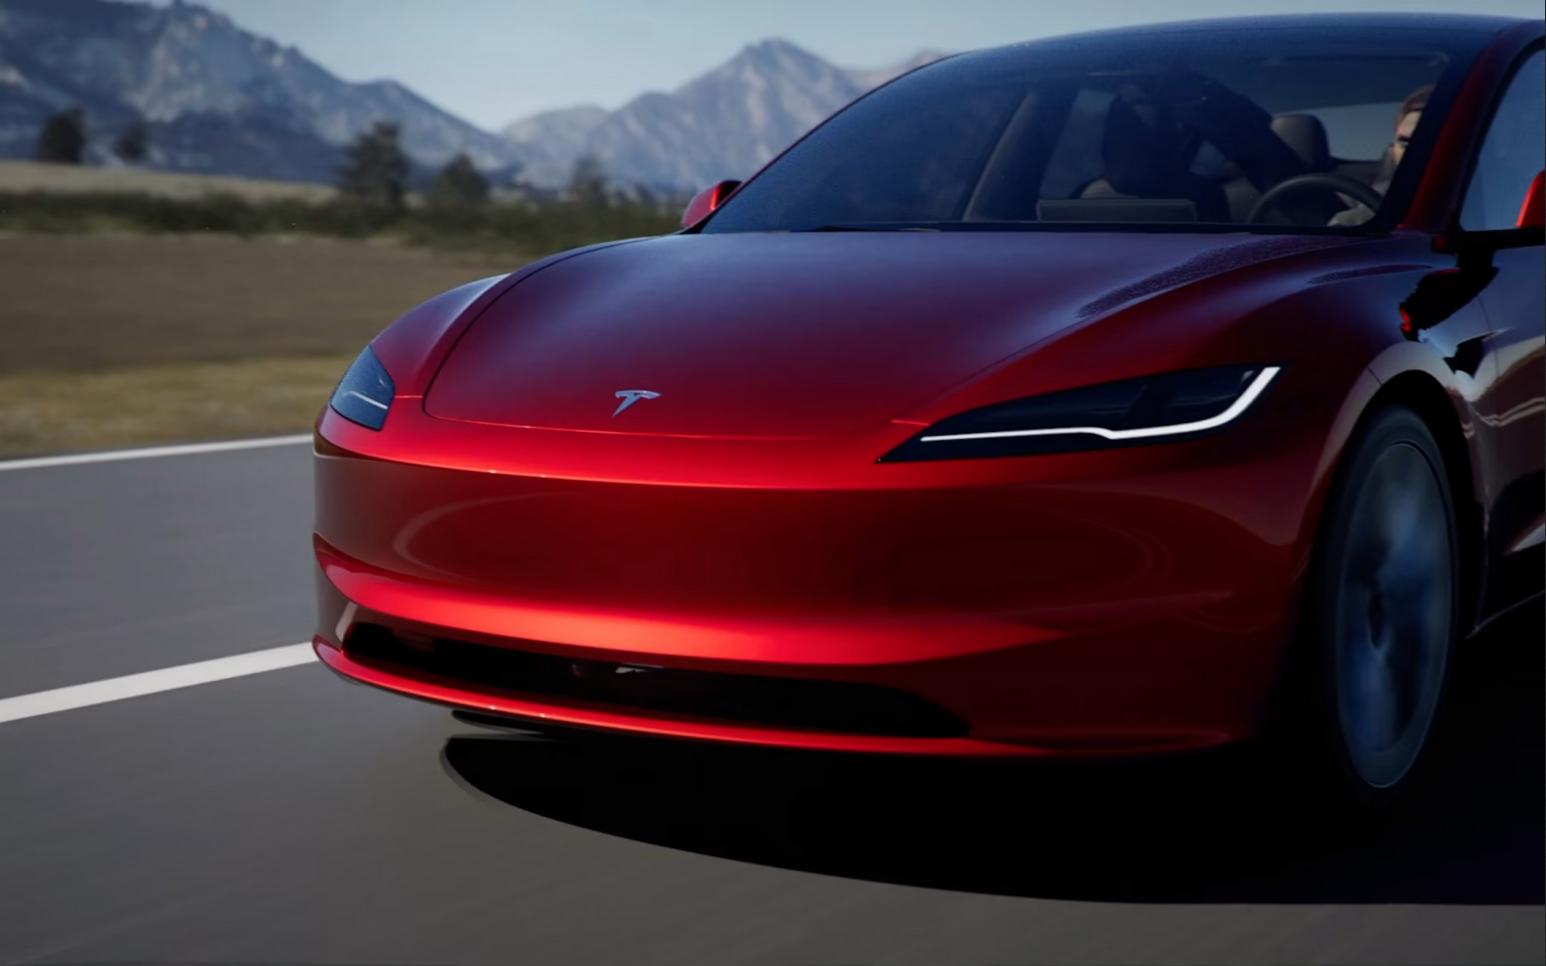 Nouvelle Tesla Model 3 Highland : autonomie, écran, intérieur, qu